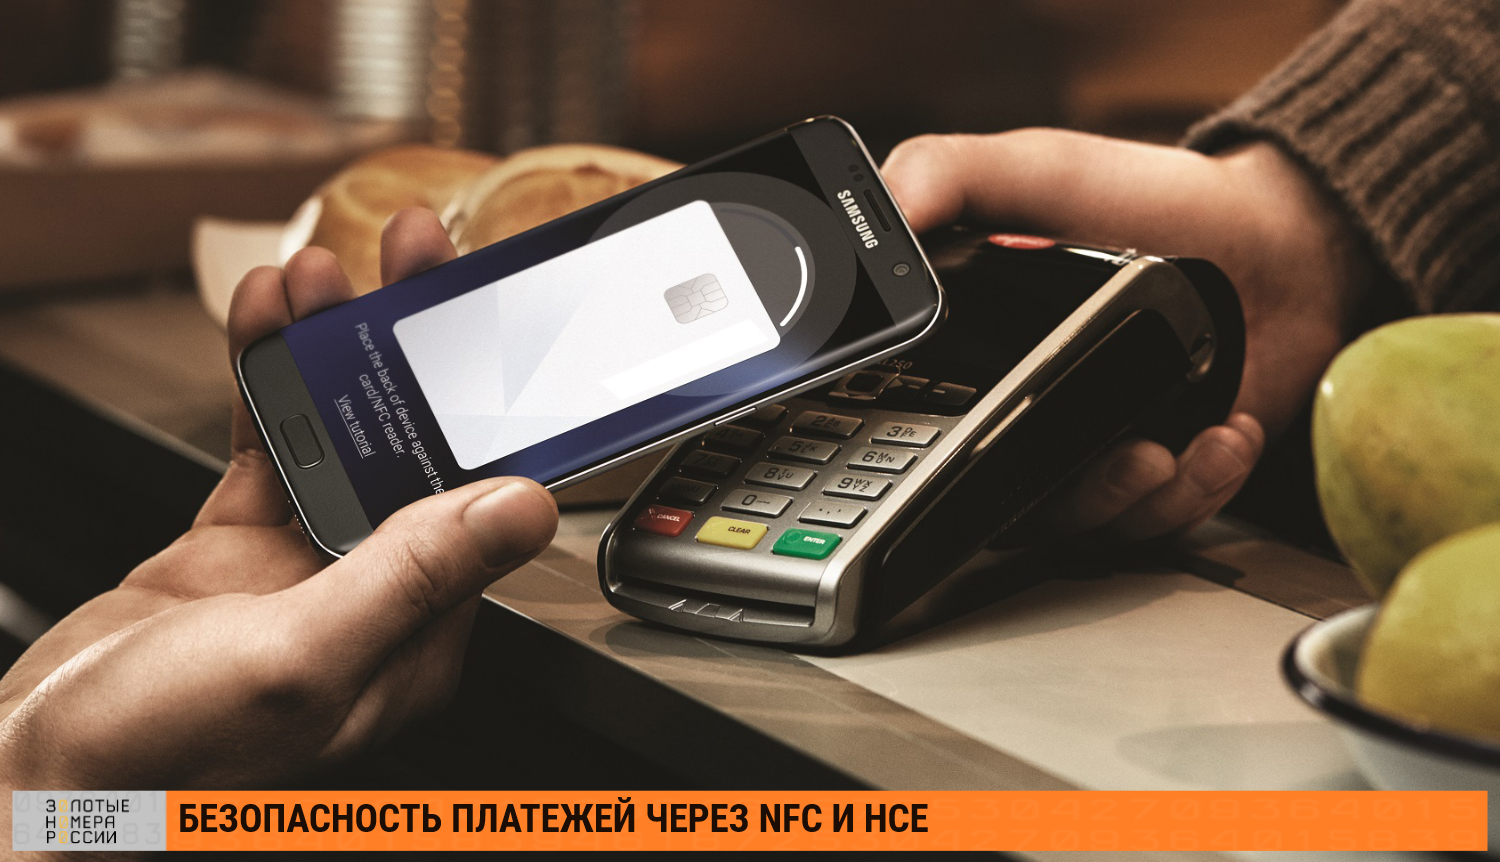 Безопасность платежей через NFC и HCE<br>